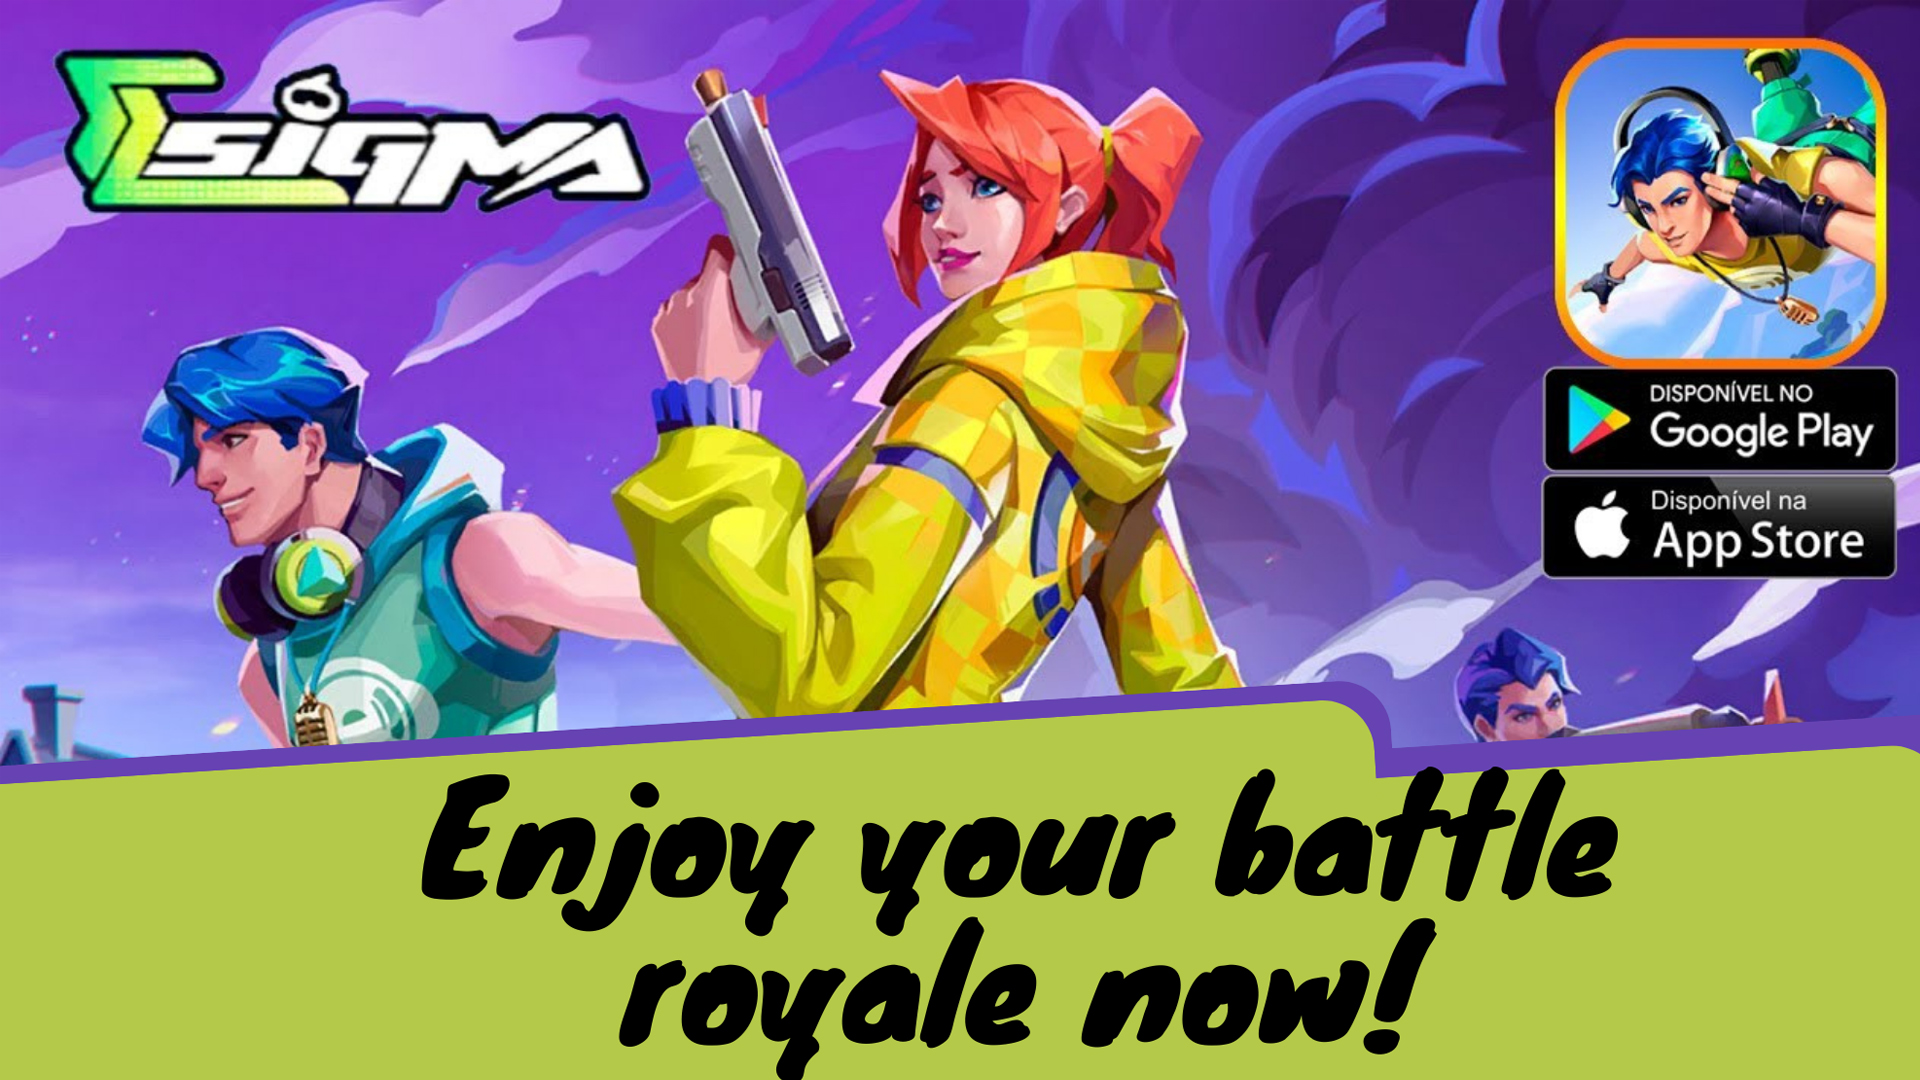 Terungkap! Link Download Game Sigma Battle Royale Terbaru v2.0.0 yang Jadi Buruan Gamers, Bisa Unduh DISINI